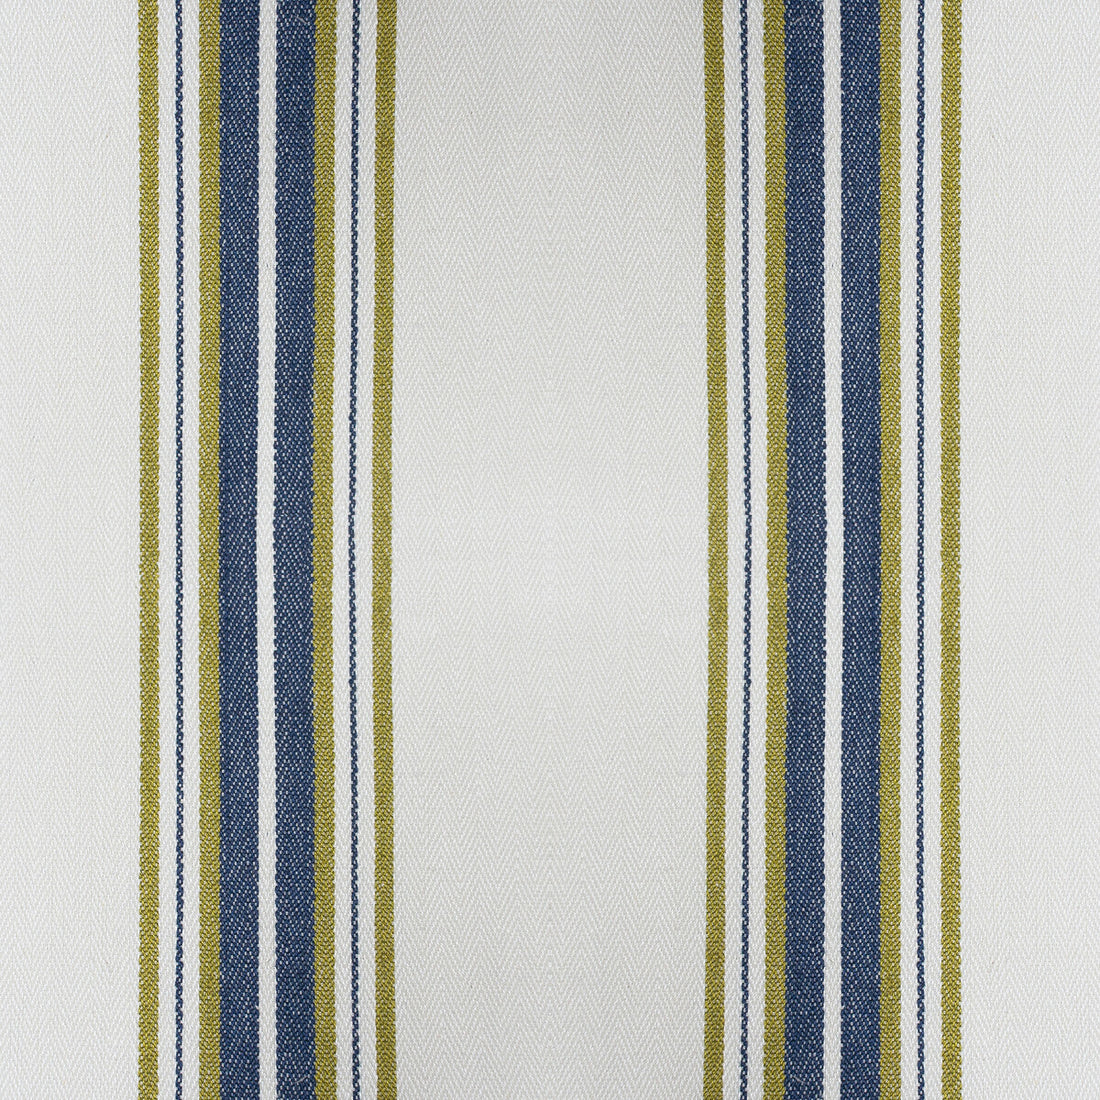 Nueva York fabric in verde/navy color - pattern GDT5573.007.0 - by Gaston y Daniela in the Gaston Luis Bustamante collection